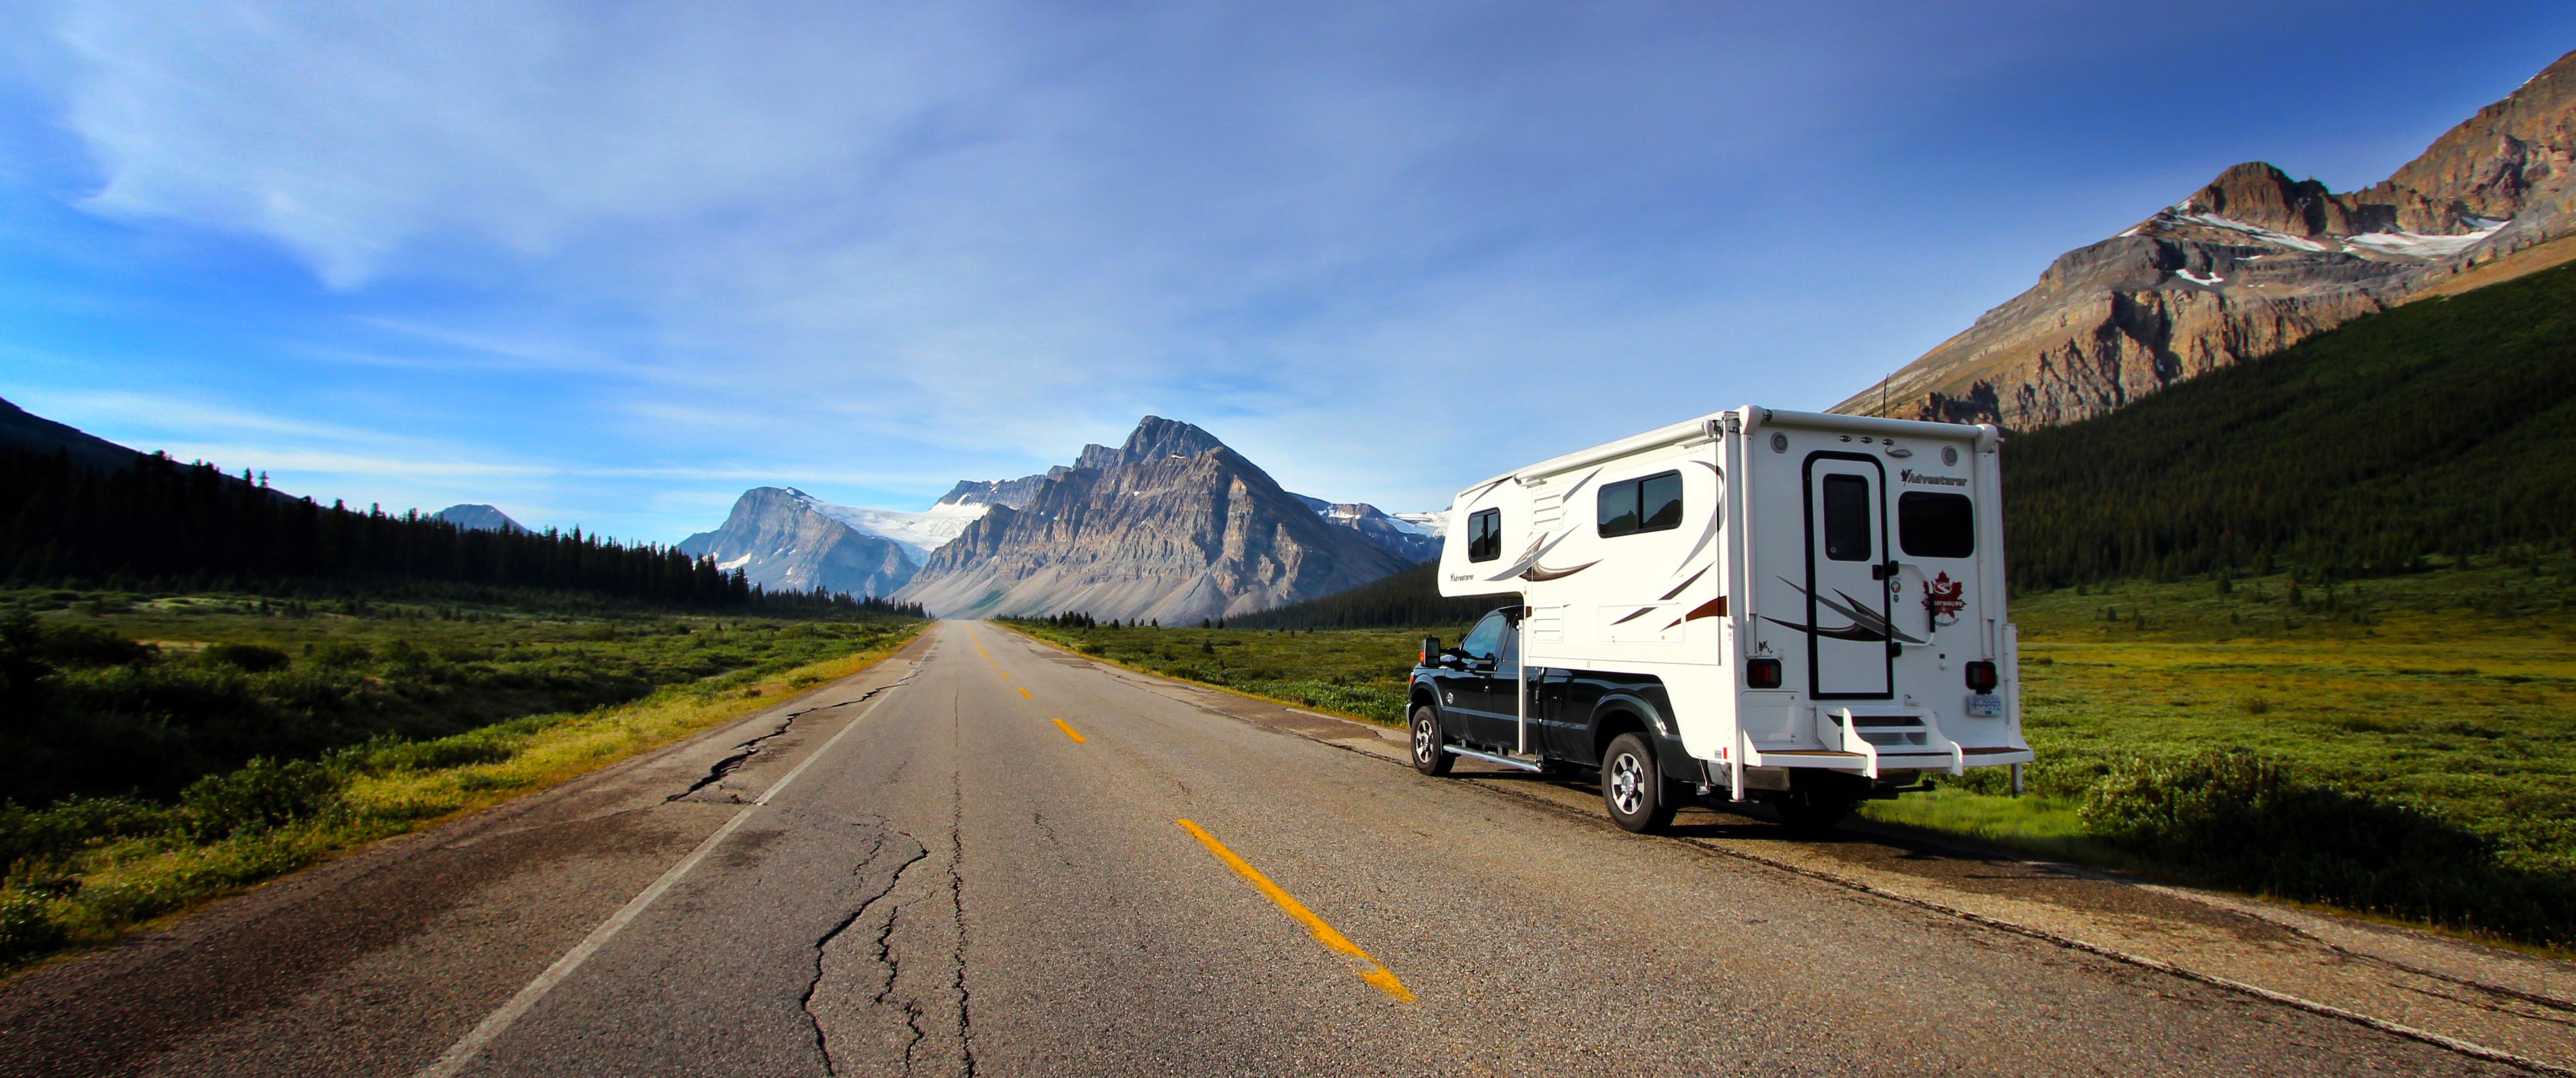 Camper auf dem Highway